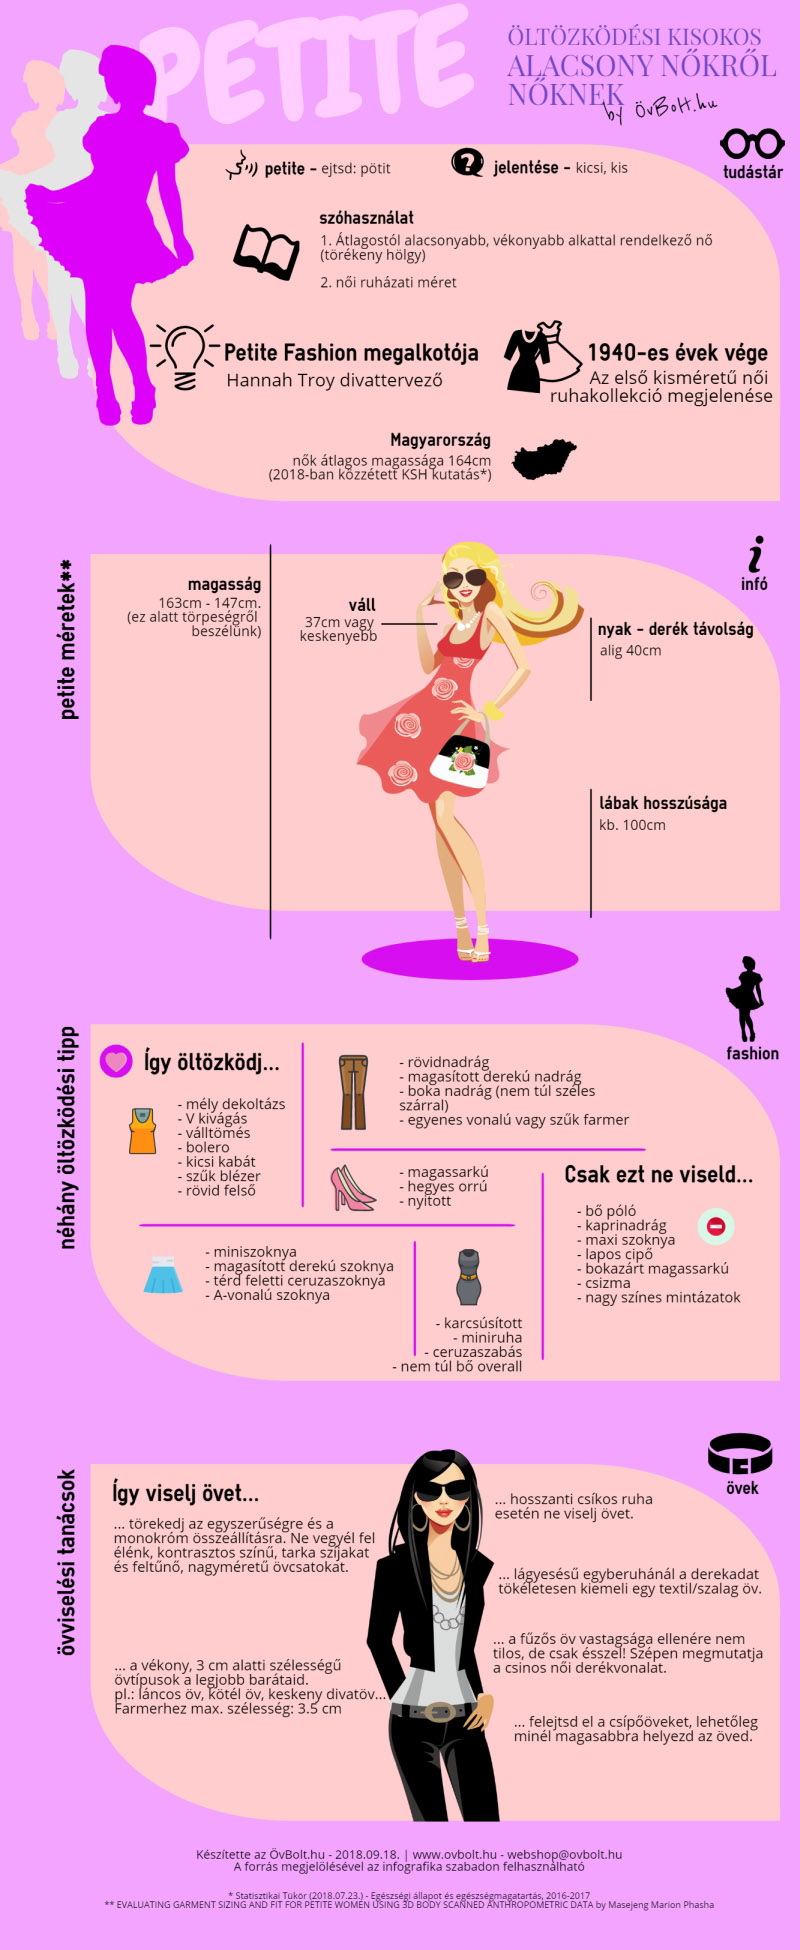 öltözködési tippek alacsony nőknek - infografika